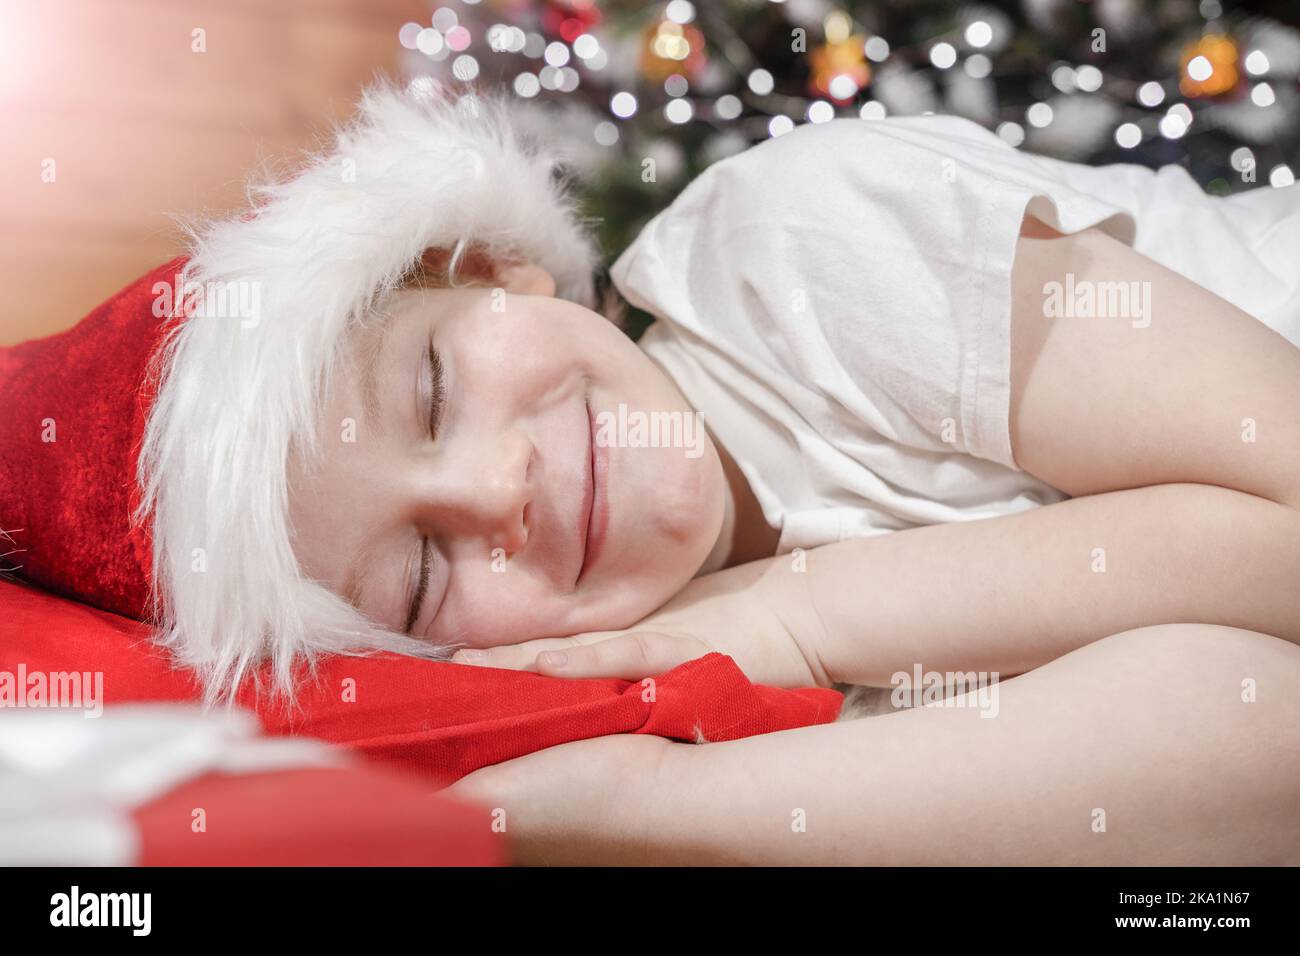 Weihnachten träumt von einem Kind. Ein Kind in einem Weihnachtsmannhut schläft im Bett neben einem Weihnachtsbaum mit Weihnachtslichtern und wartet auf das Weihnachtsgeschenk. Stockfoto